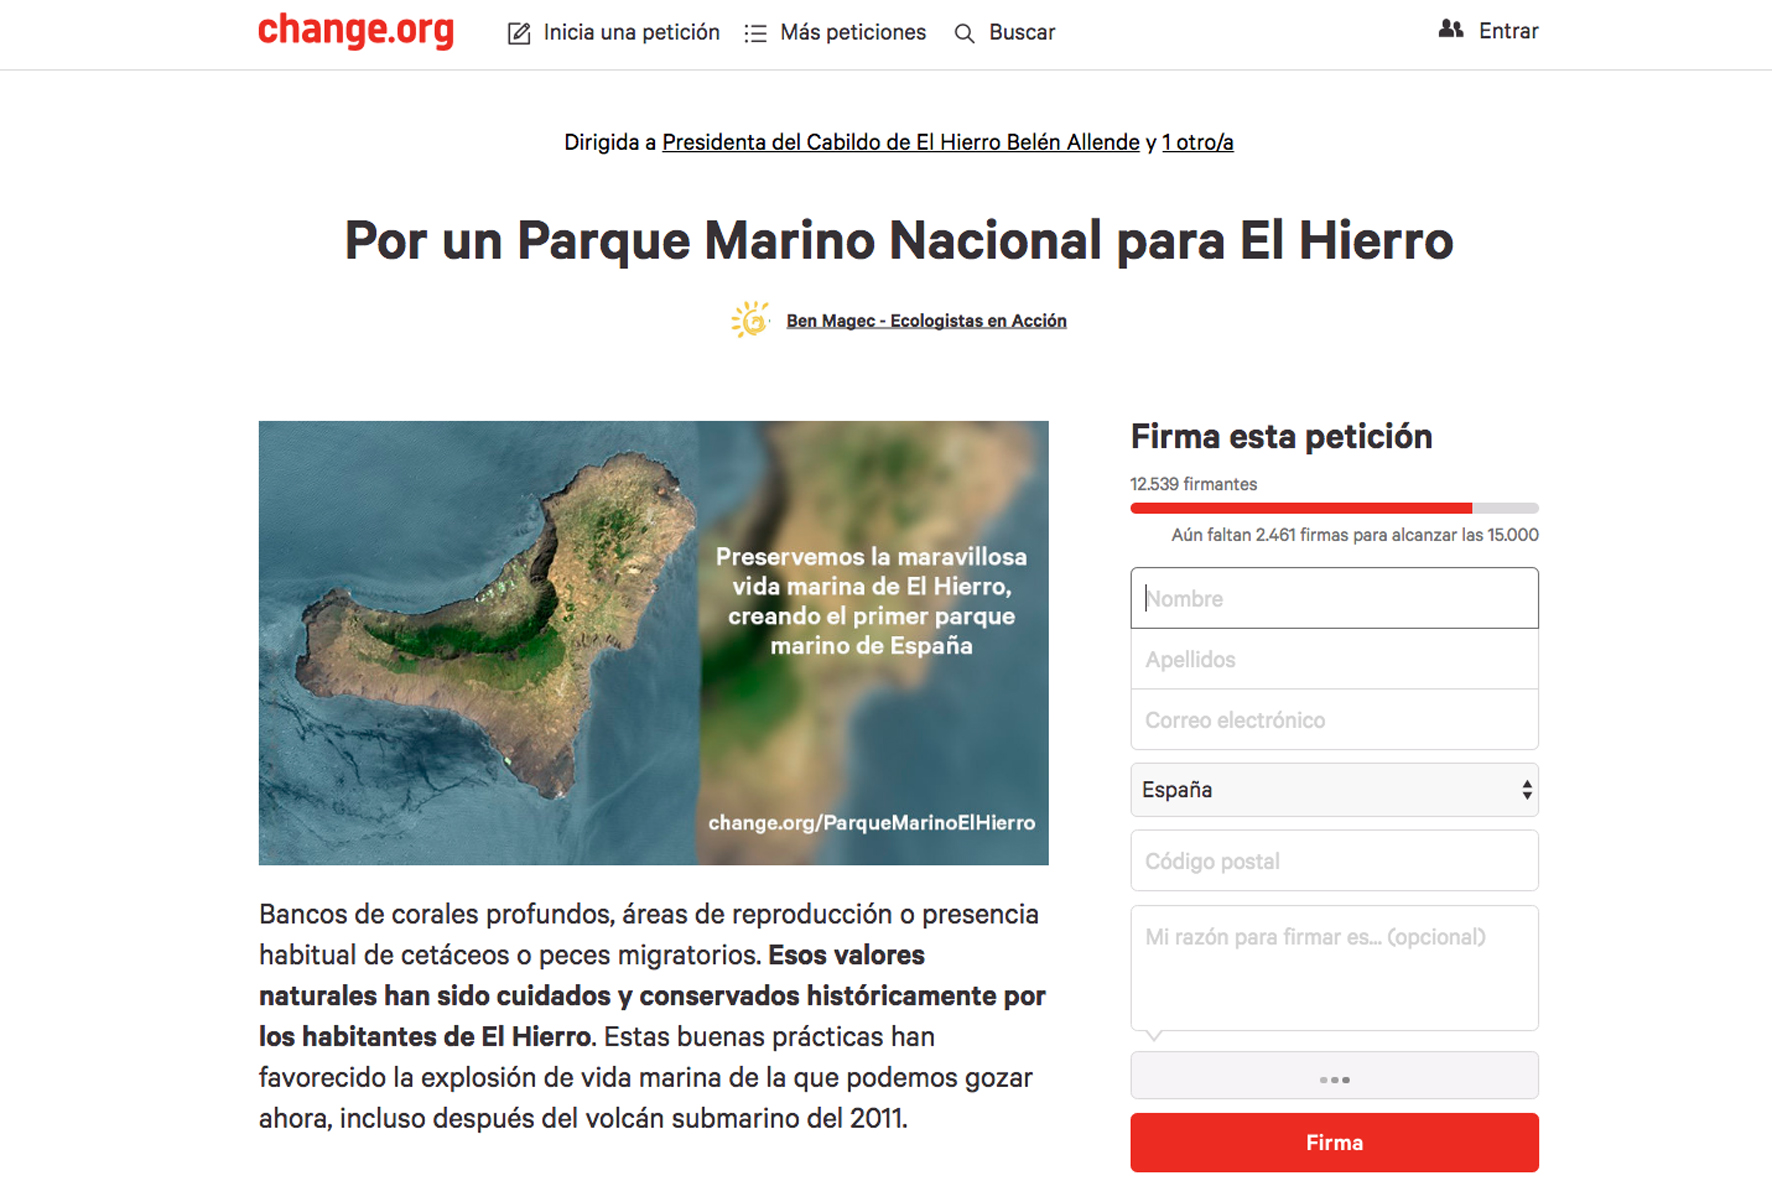 Ben Magec - Ecologistas en Acción presenta más de 12.000 firmas a favor del Parque Nacional marino de El Hierro